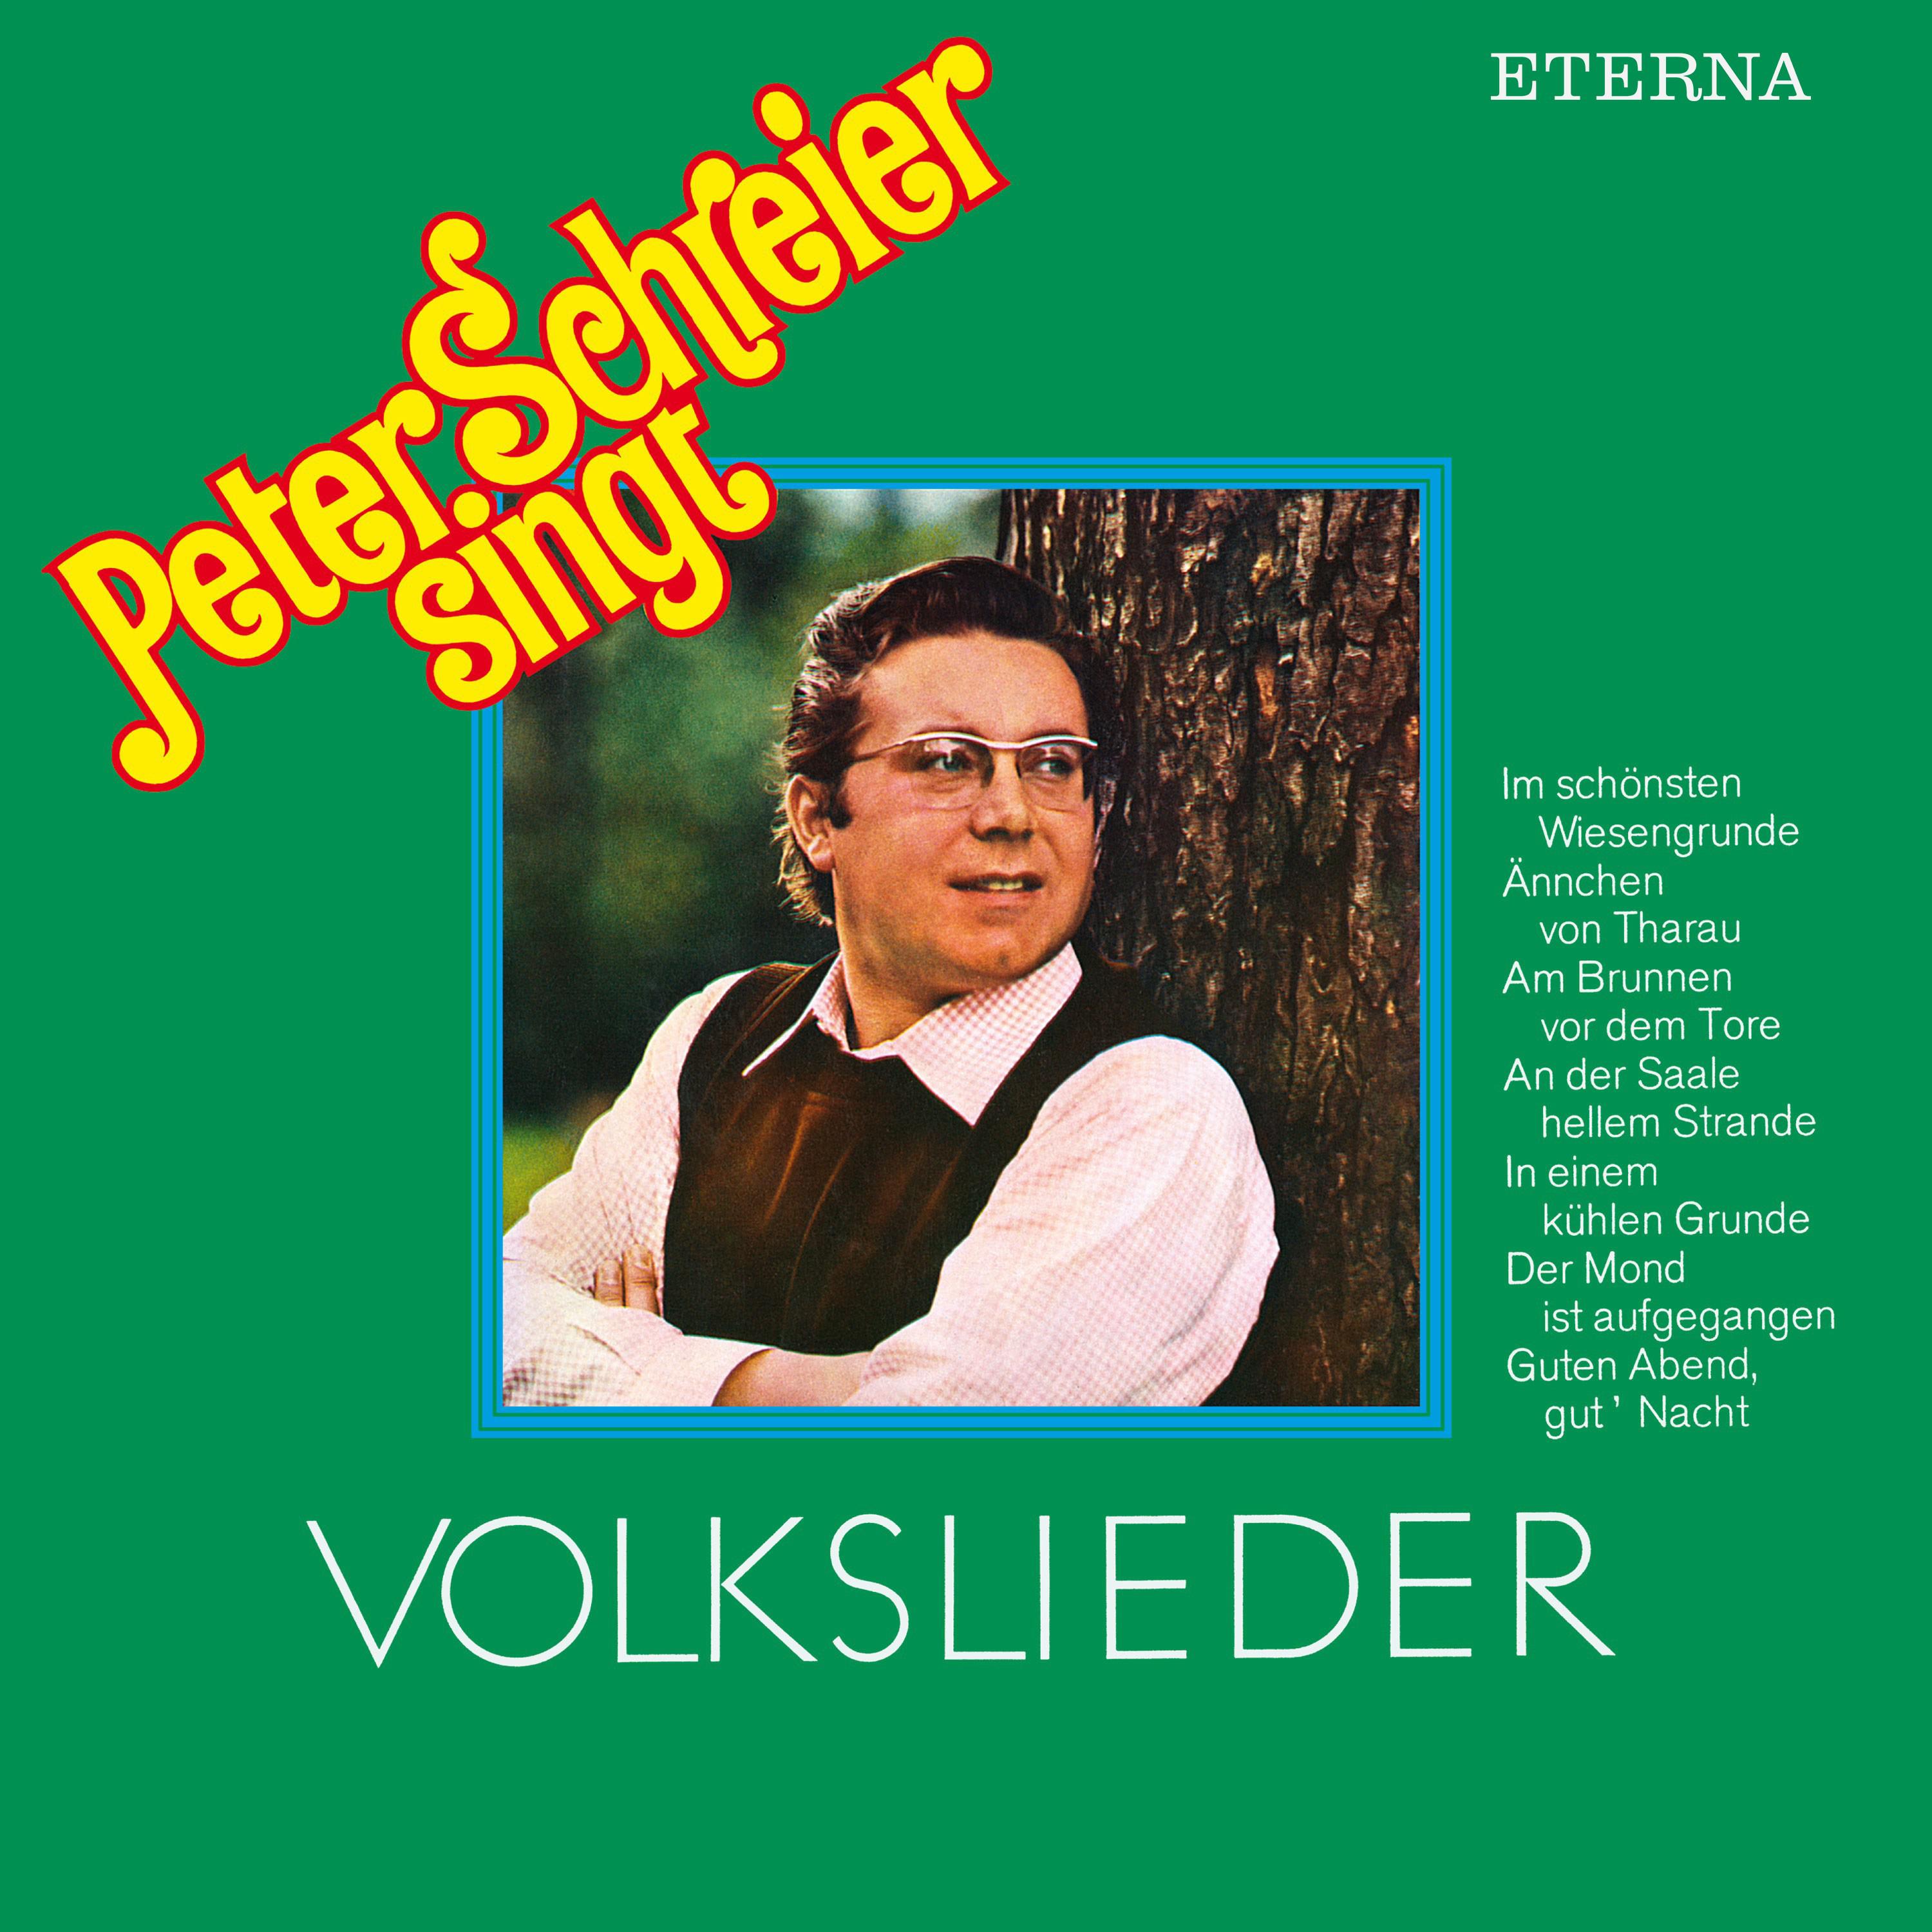 Peter Schreier singt Volkslieder